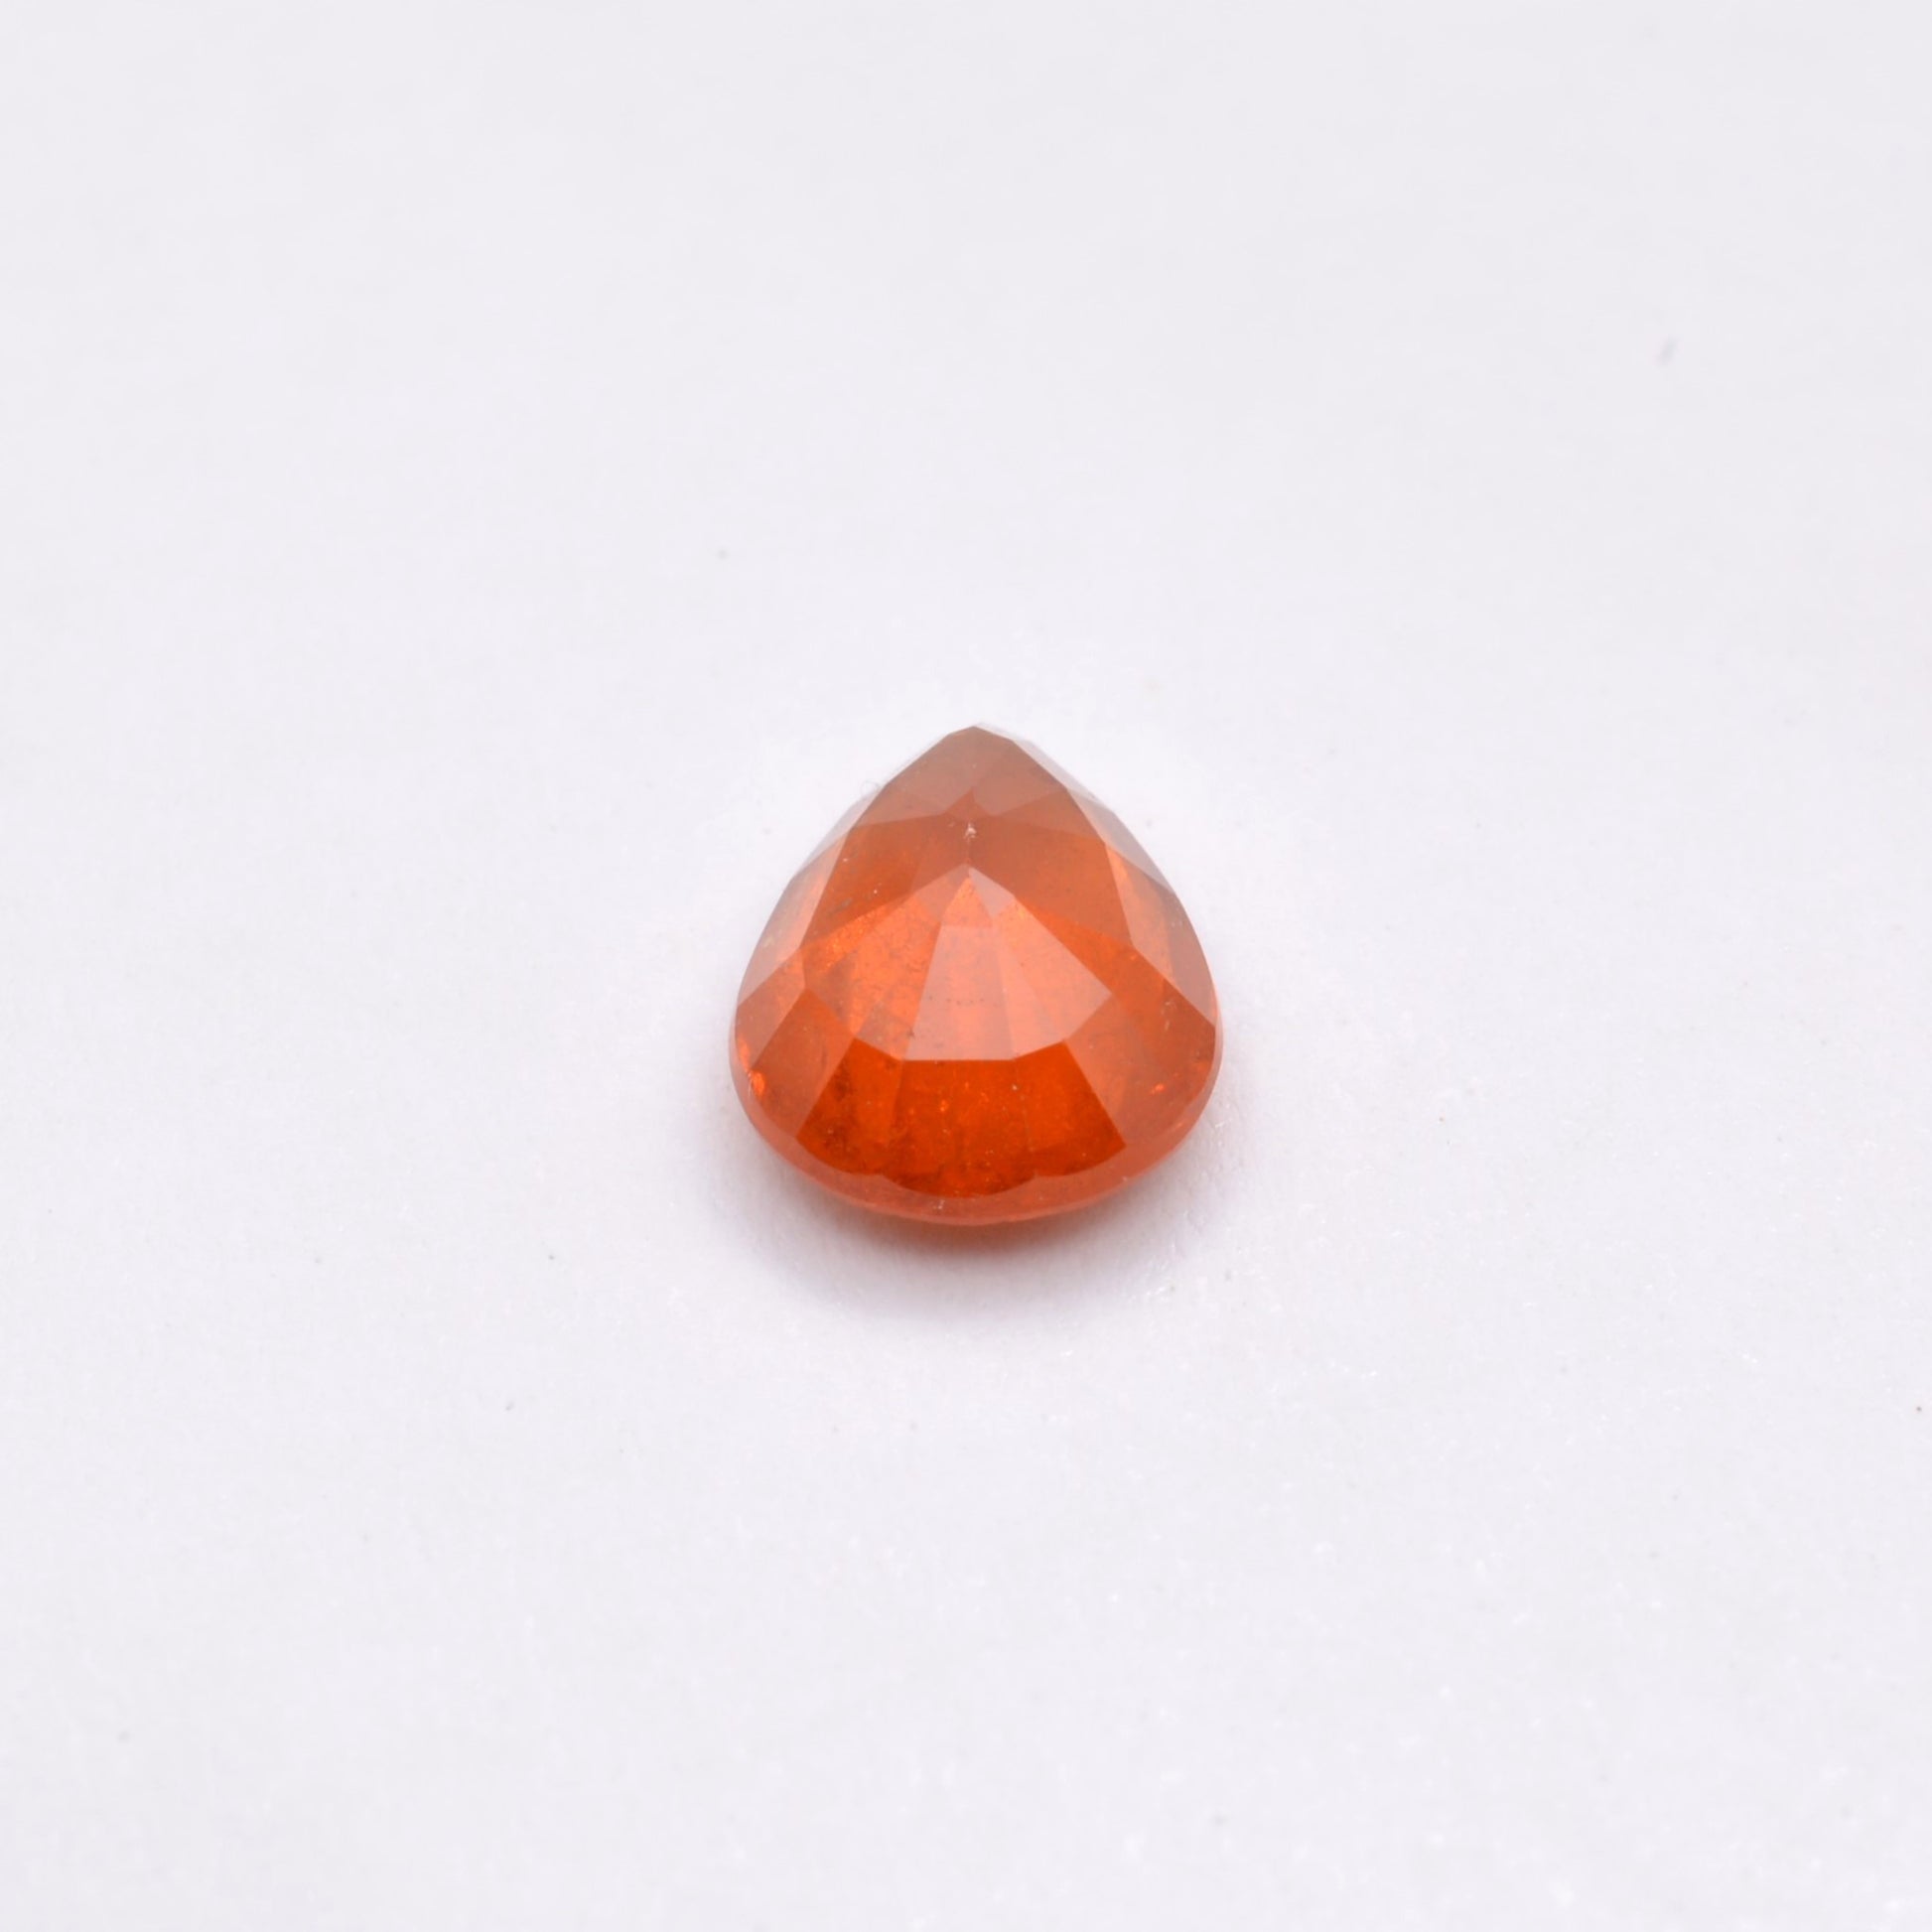 Grenat Spessartite Poire 2,57ct - pierre précieuse - gemme